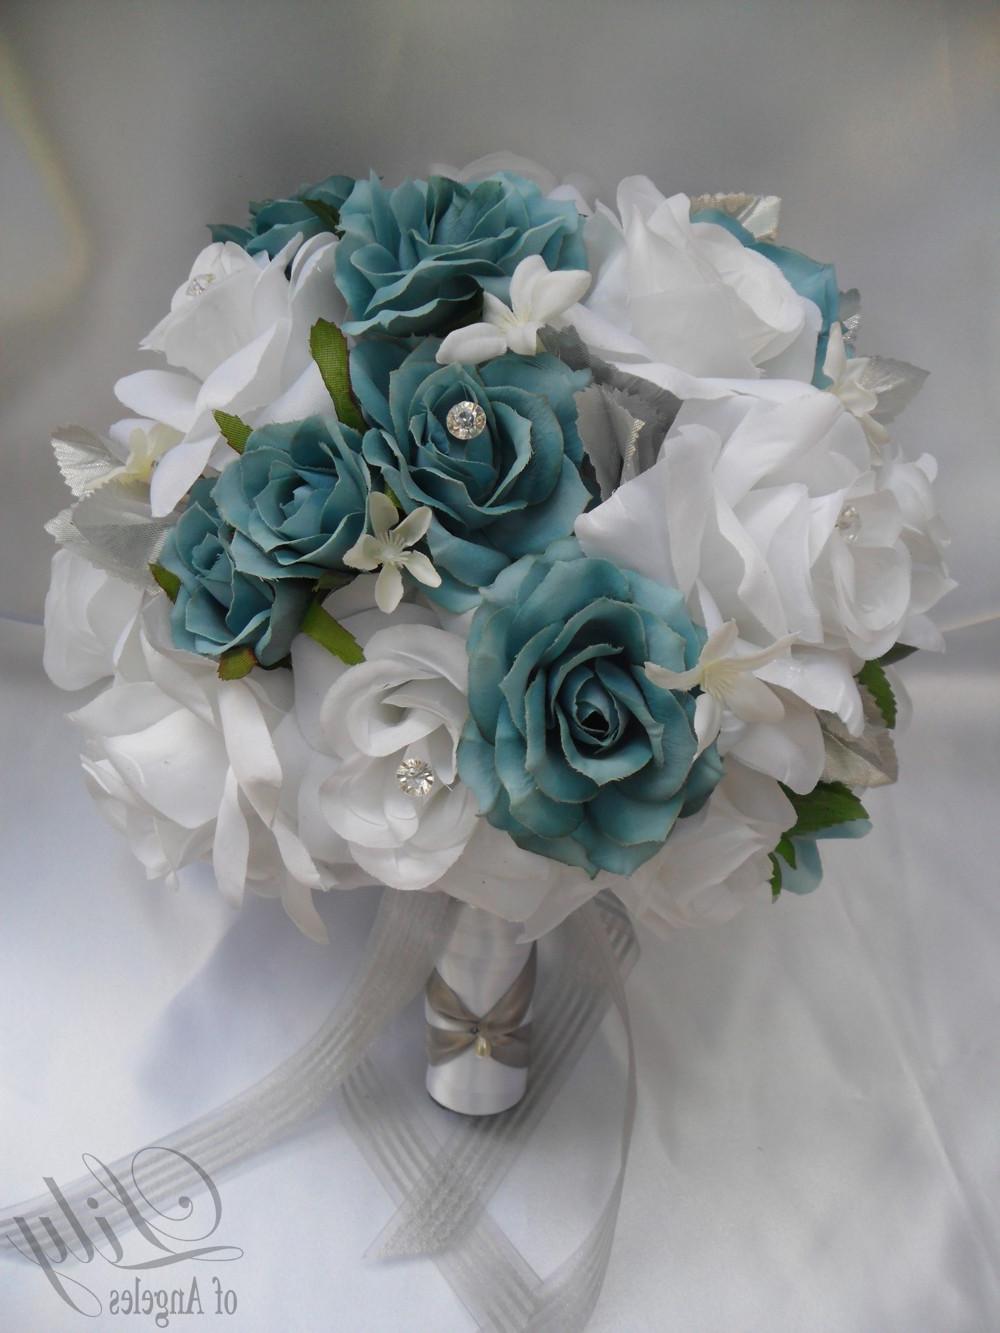 Flower Wedding Decoration